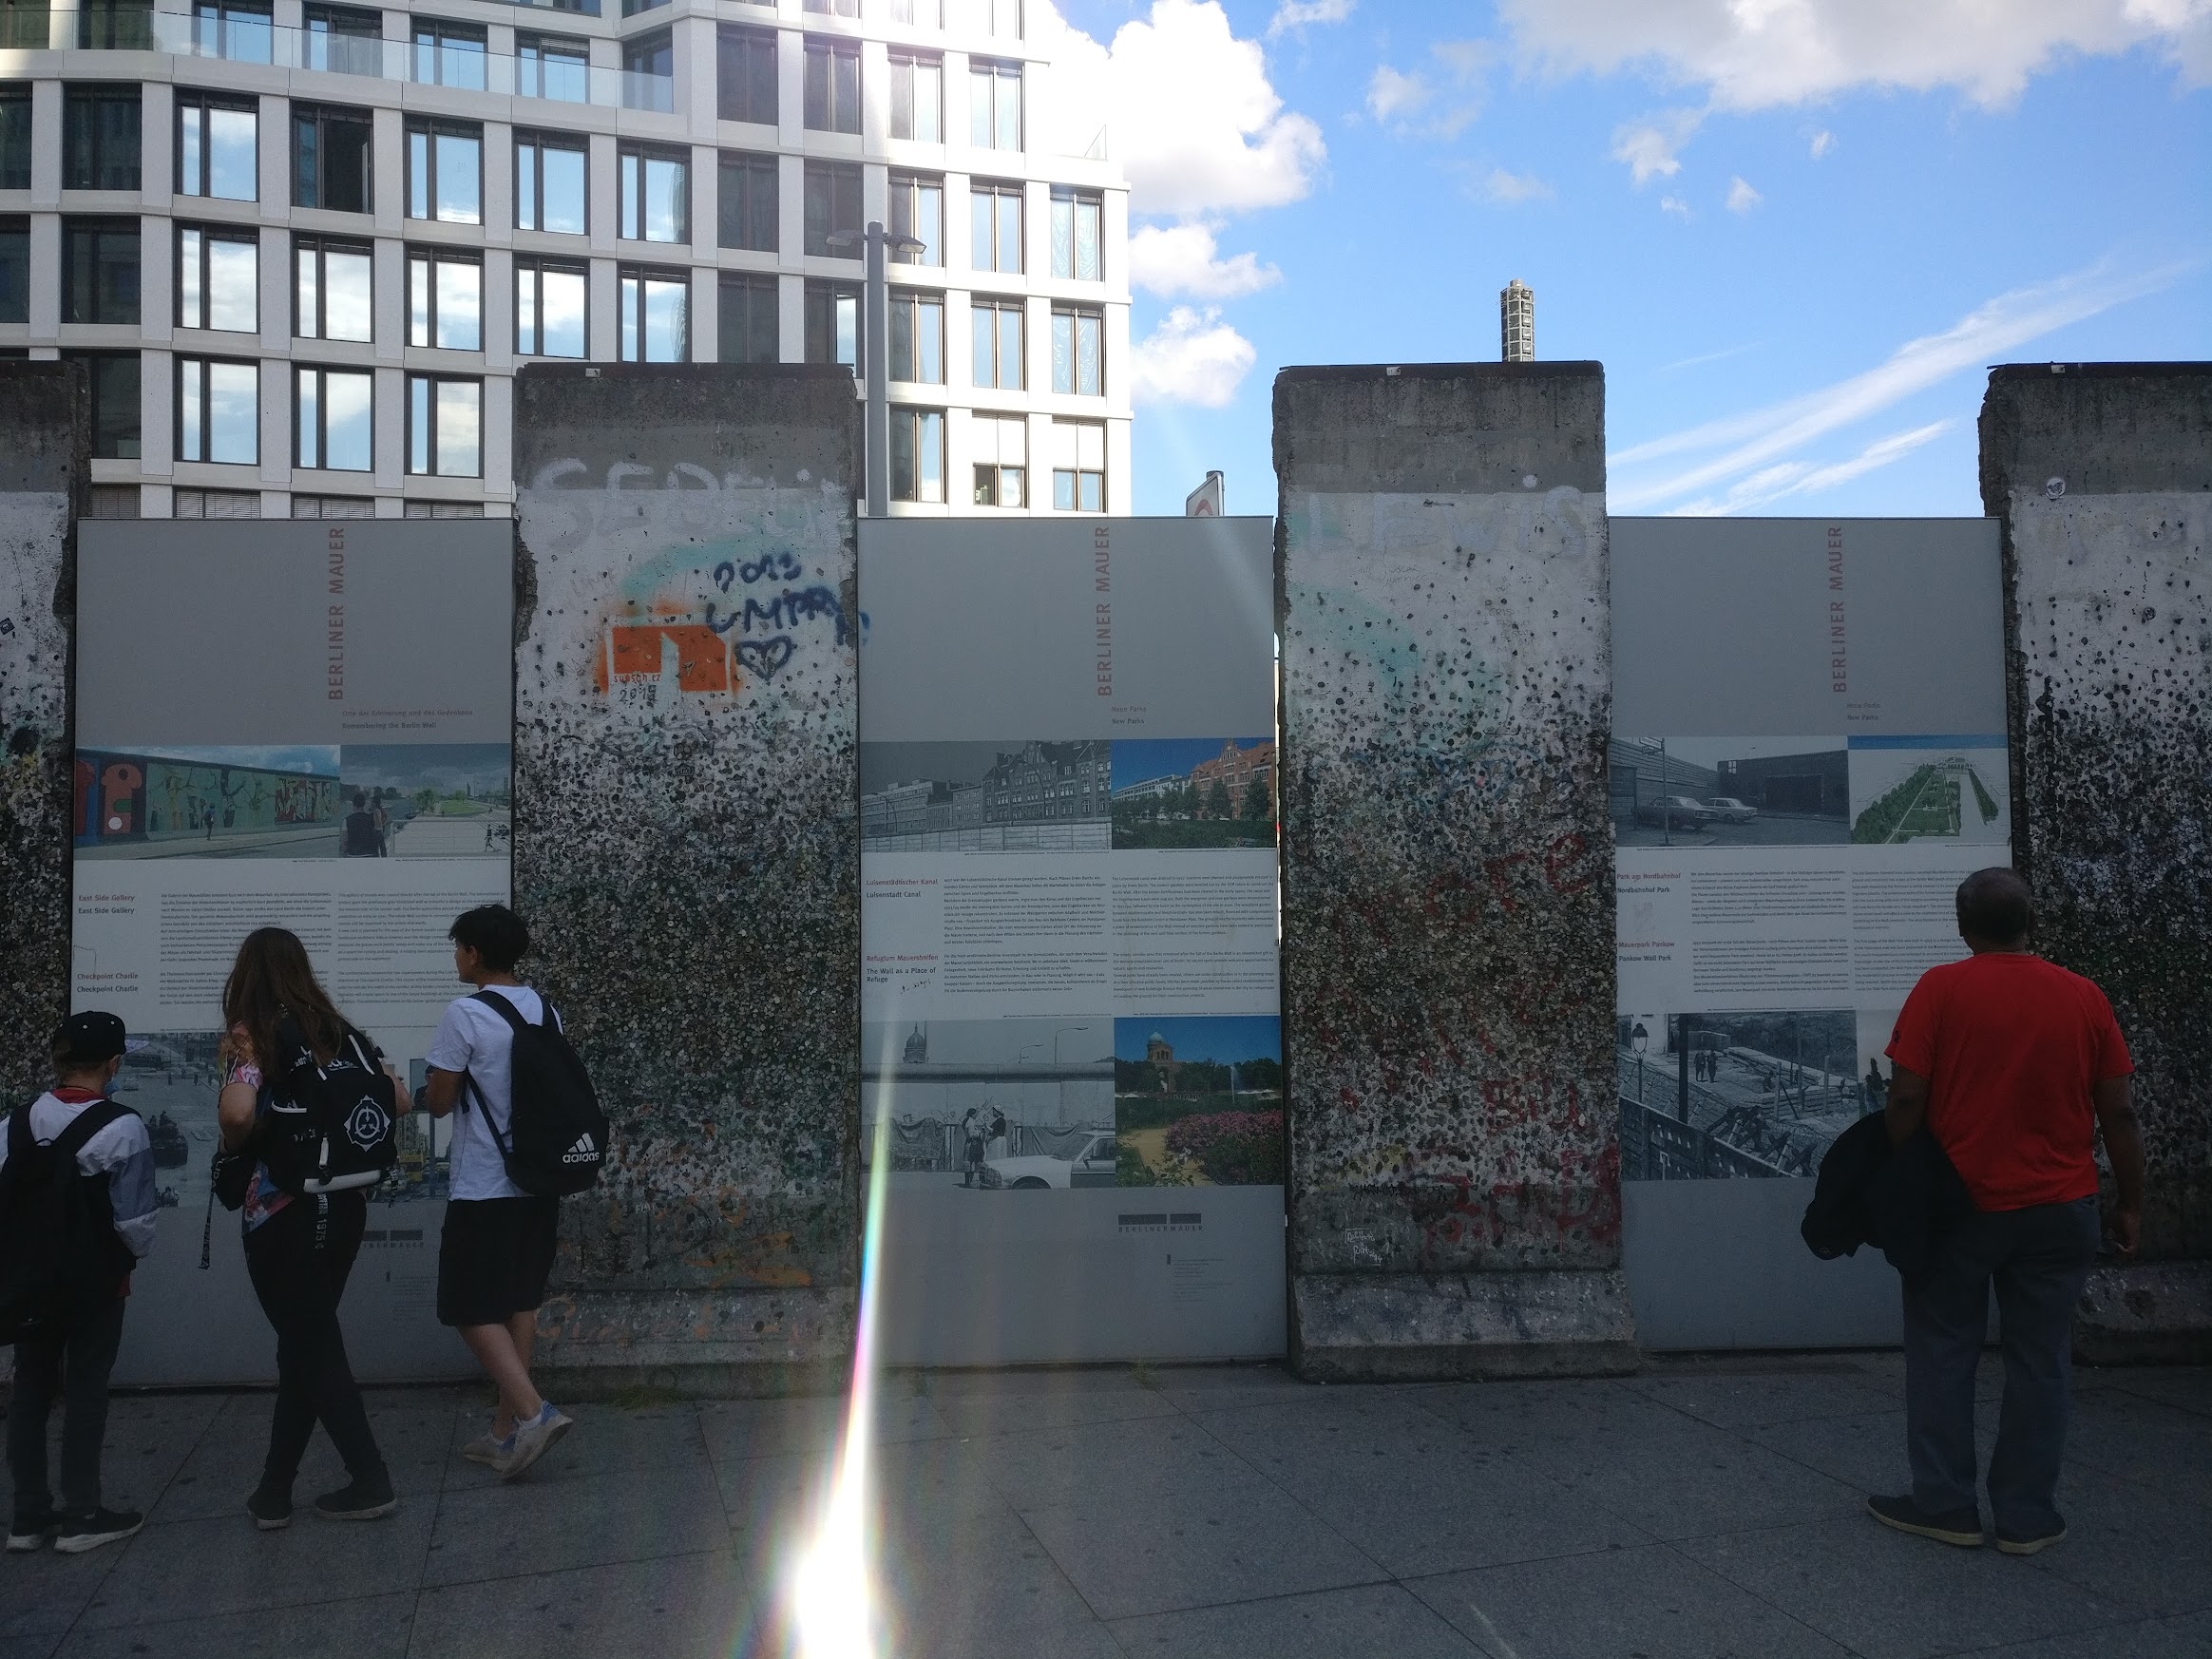 Rest of Berlin wall at Potsdamer Platz